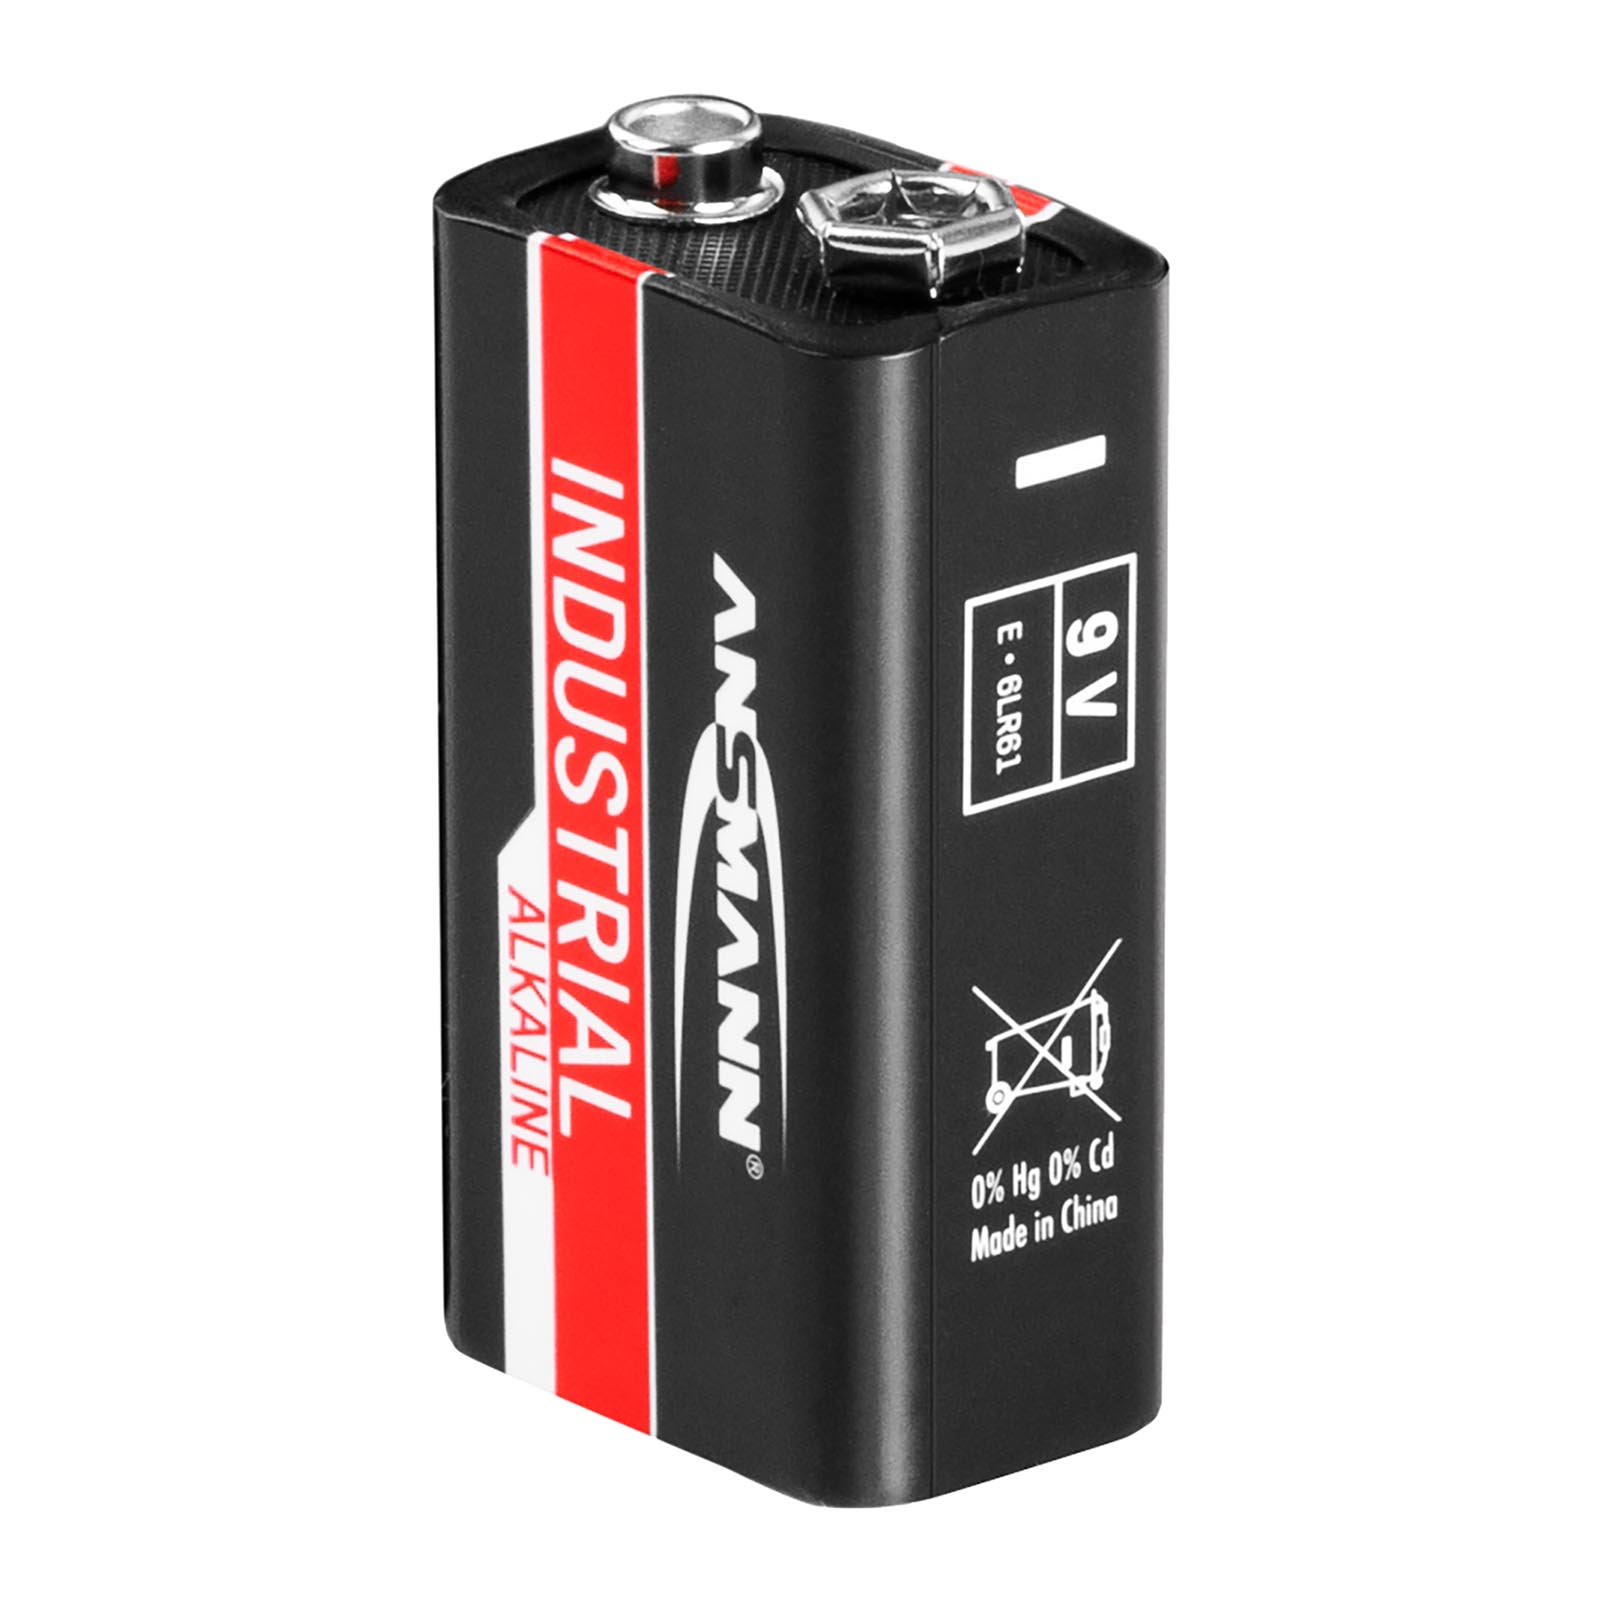 Zestaw Baterie przemysłowe - alkaliczne - 9V - E-Block - 6LR61 - 20 szt.